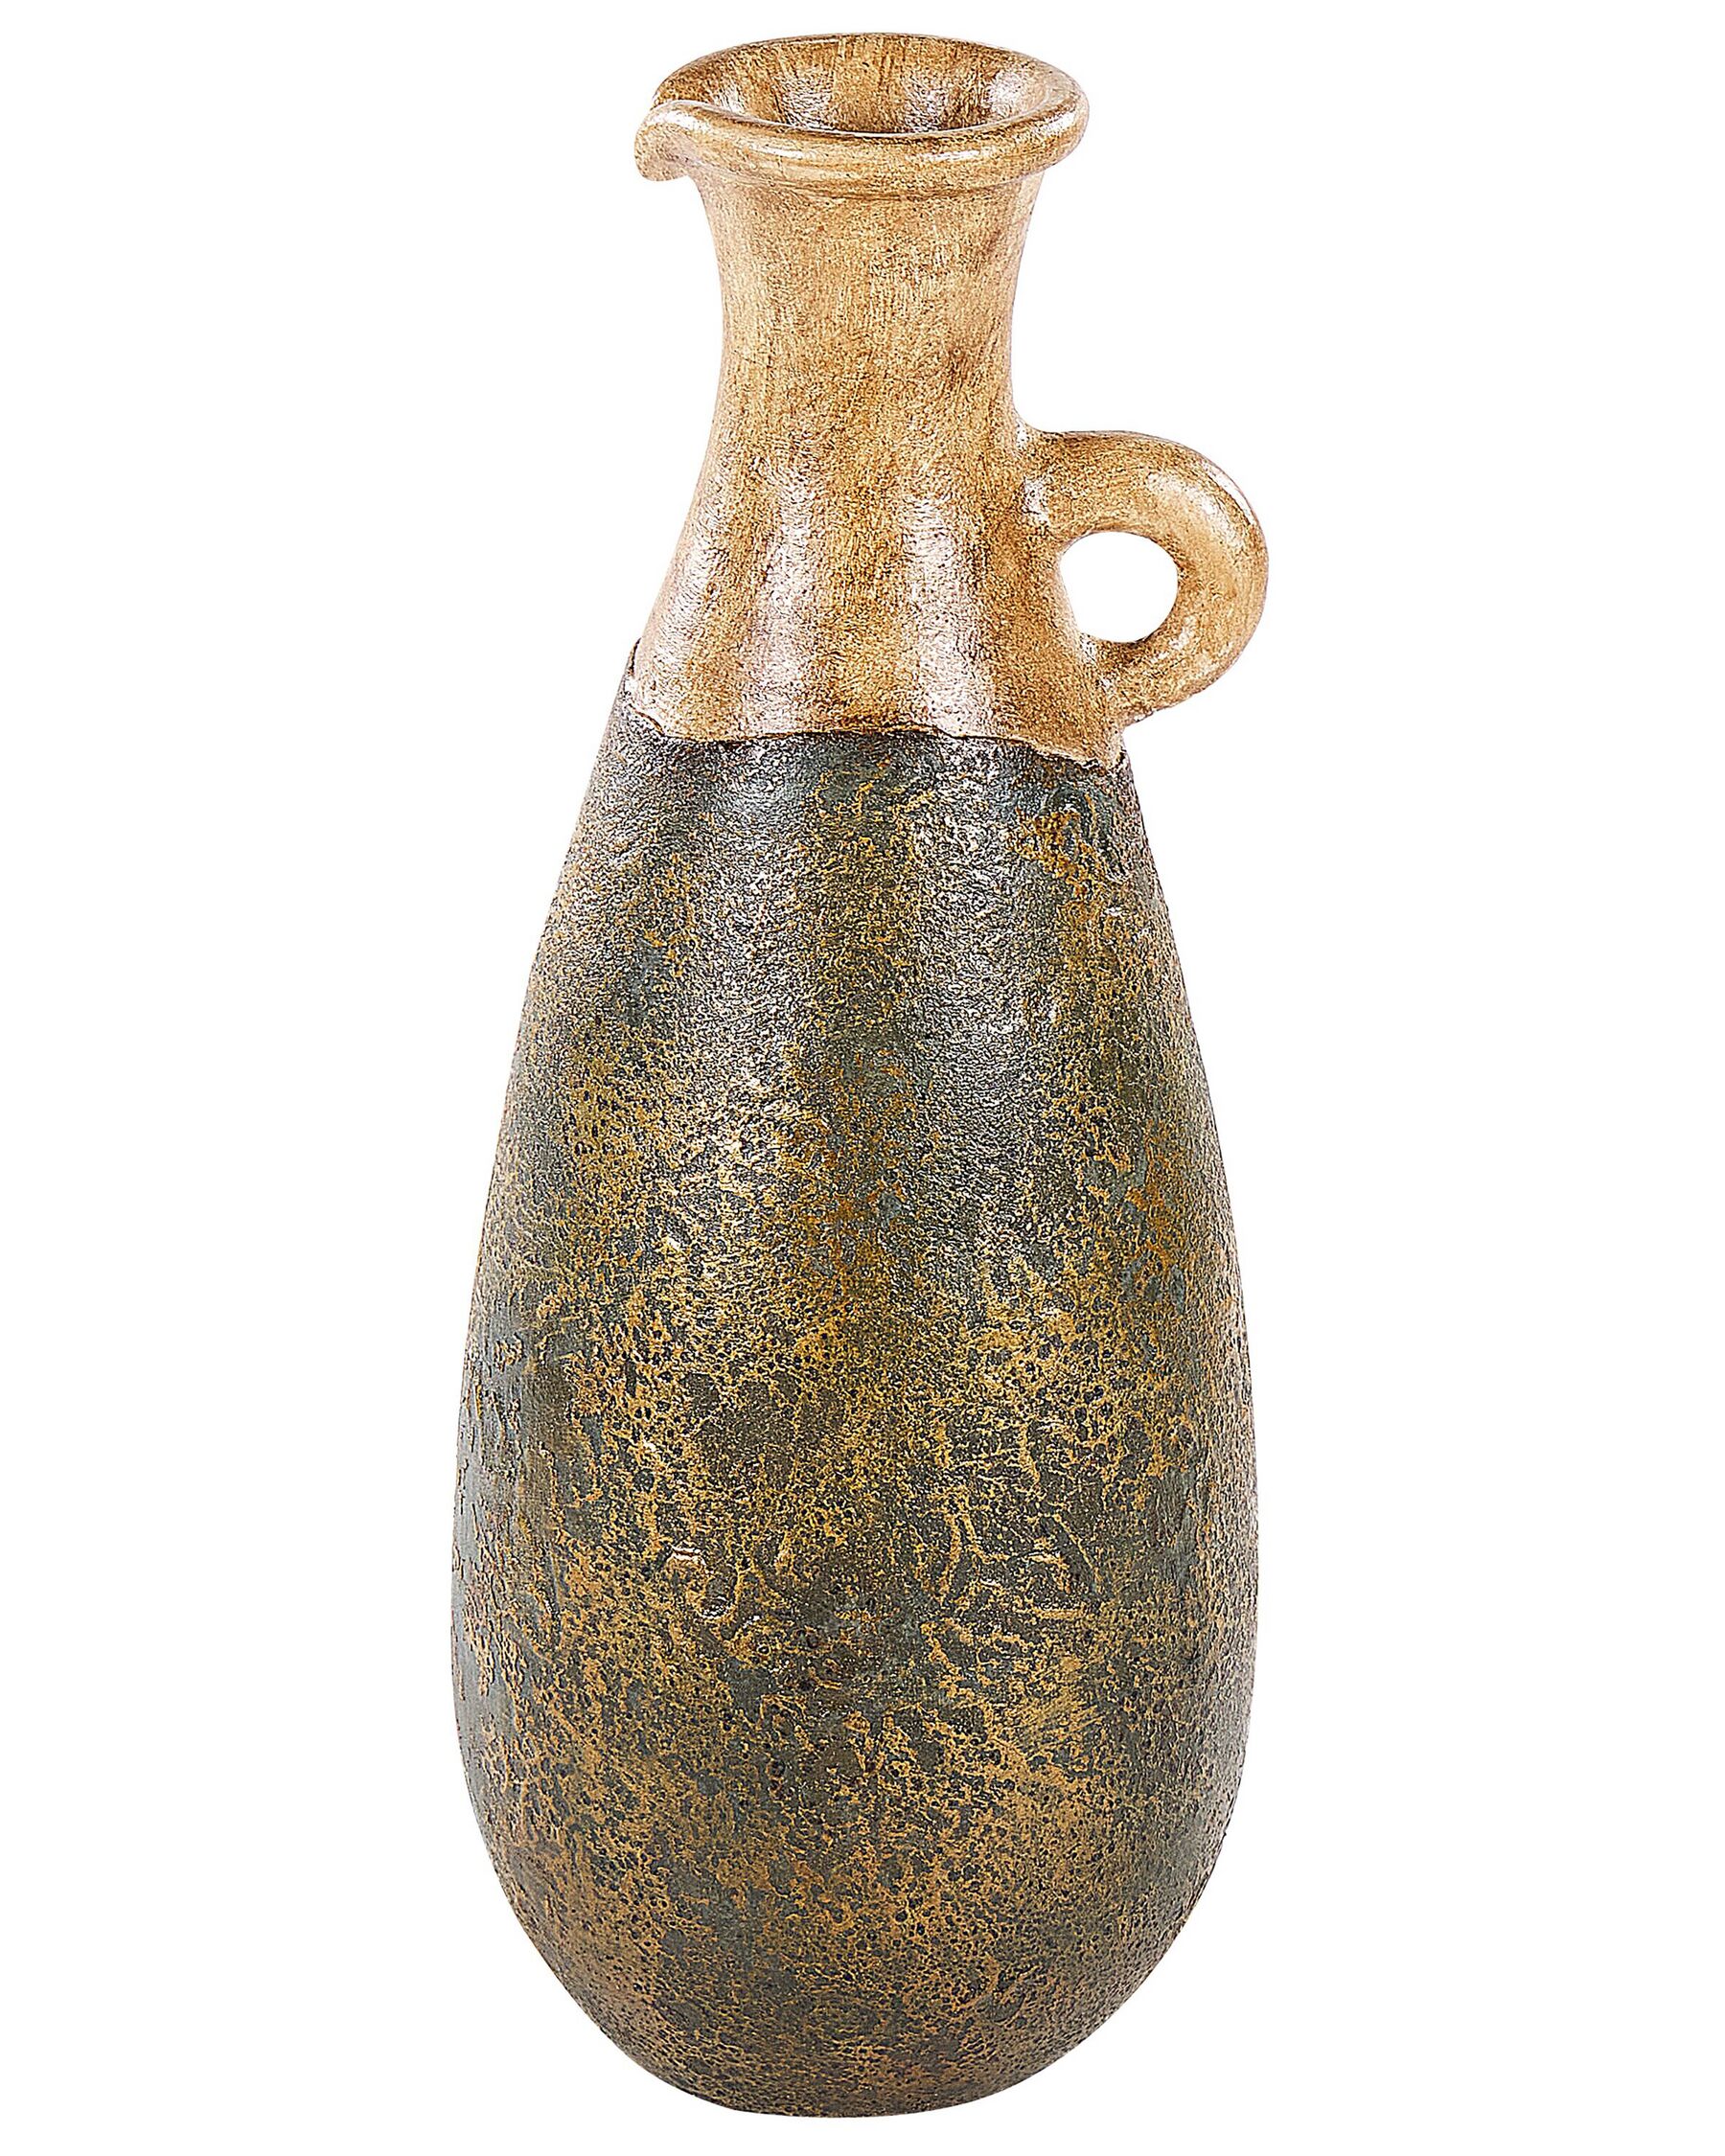 Terakotová dekorativní váza 50 cm zelená/zlatá MARONEJA_850819